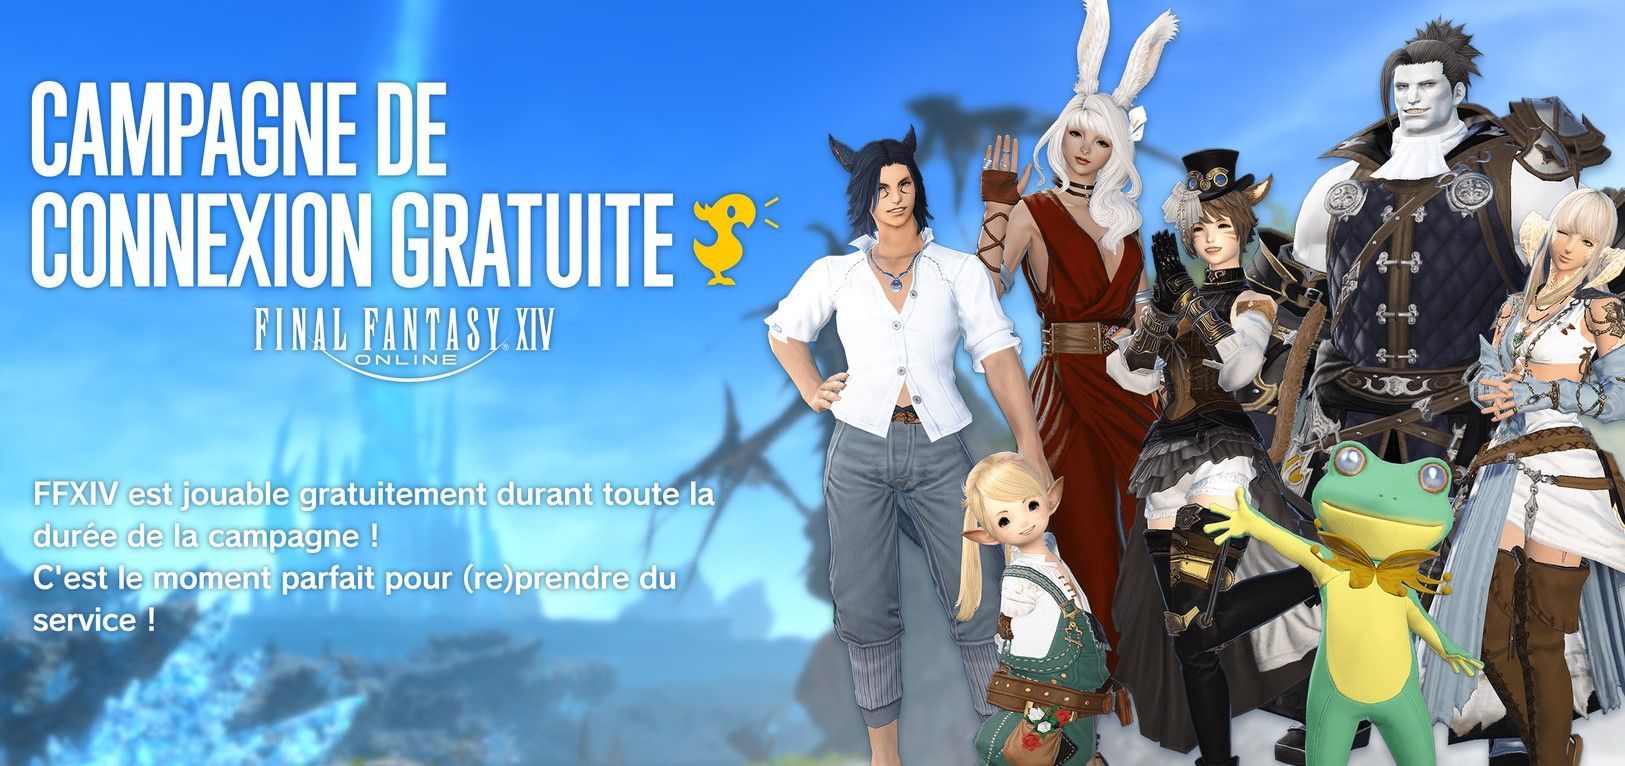 Final Fantasy 14 annonce sa campagne de connexion gratuite pour cet été